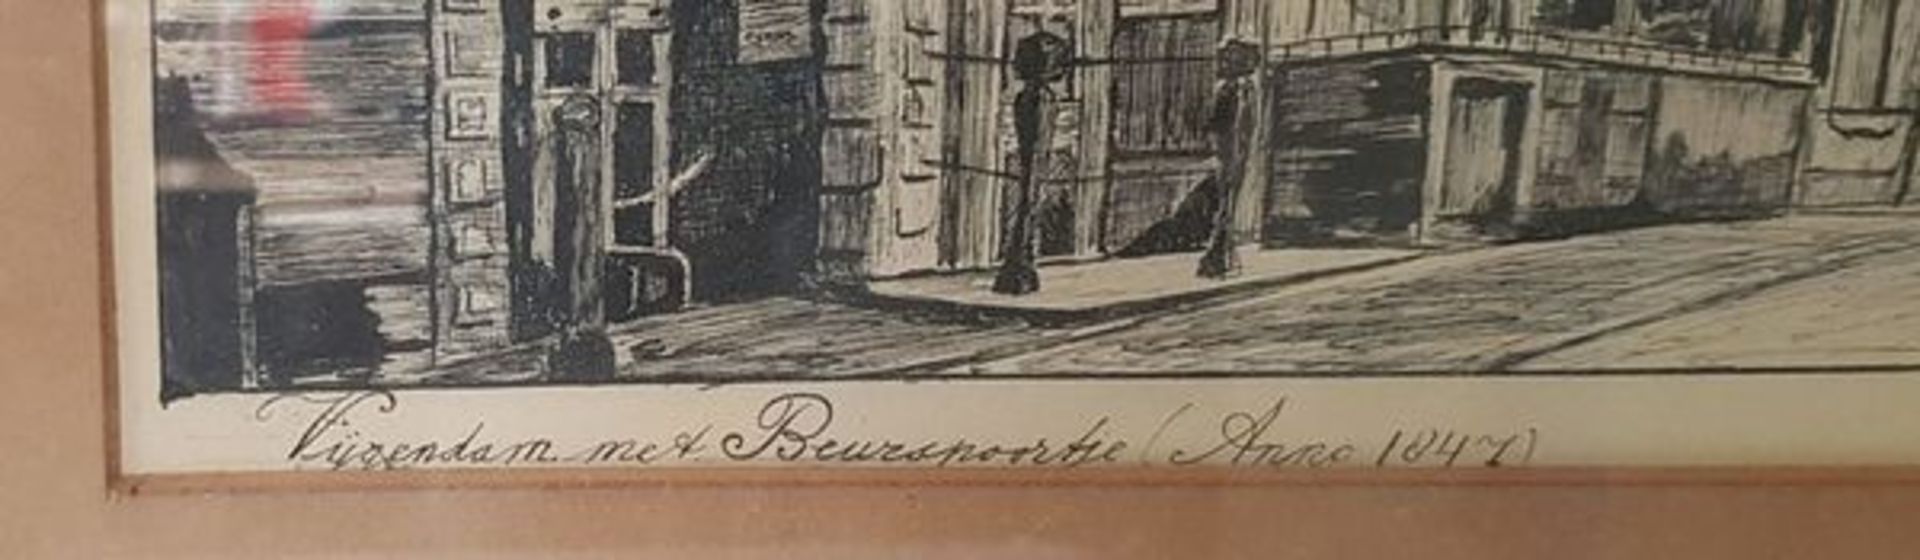 (Kunst) Tekening AmsterdamTekening van de Vijgendam met Beurspoortje (anno 1847) Amsterdam, Wim - Bild 3 aus 4